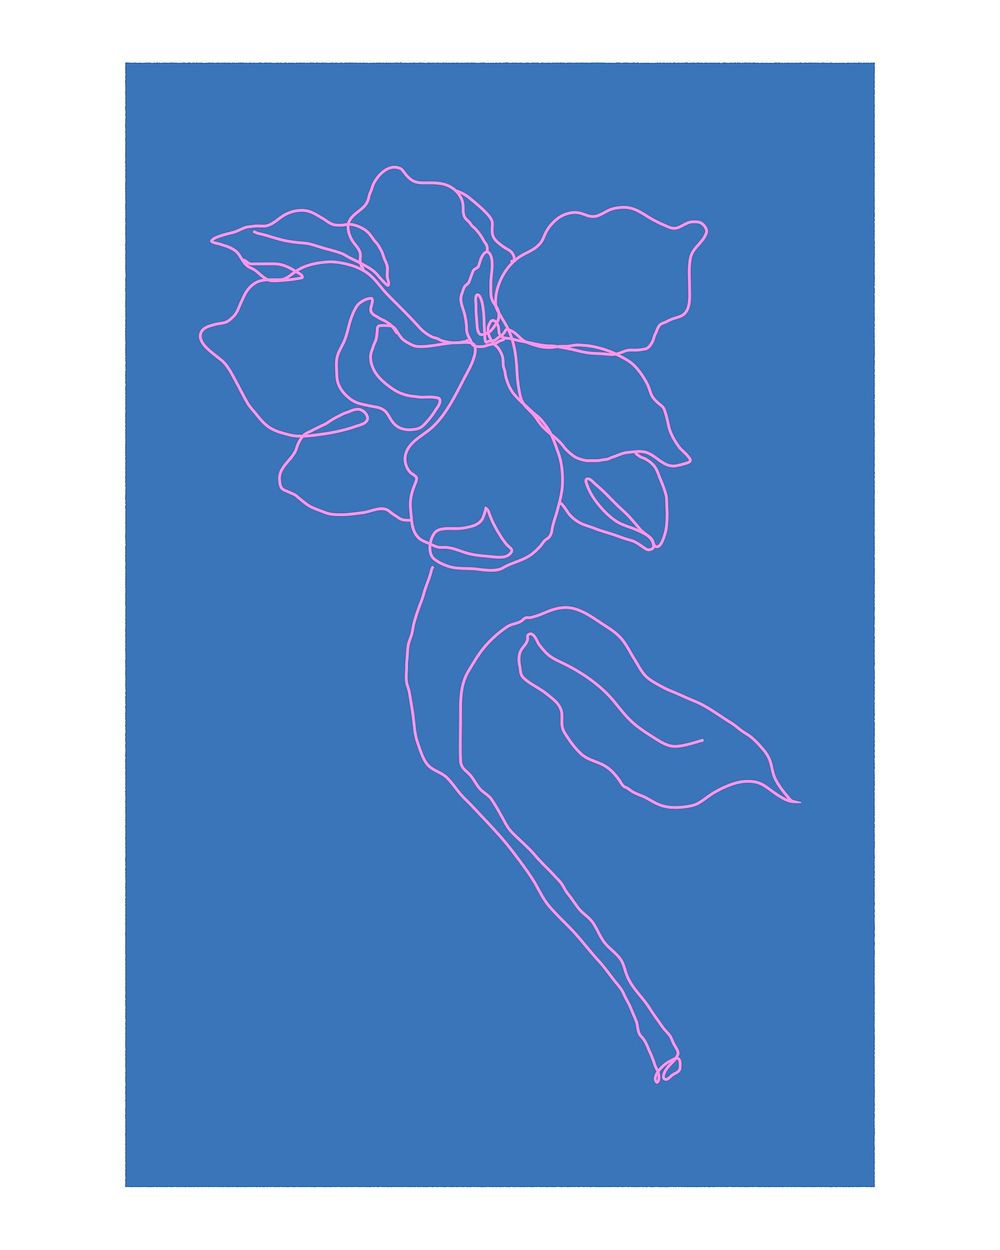 Flower line art poster, aesthetic blue design